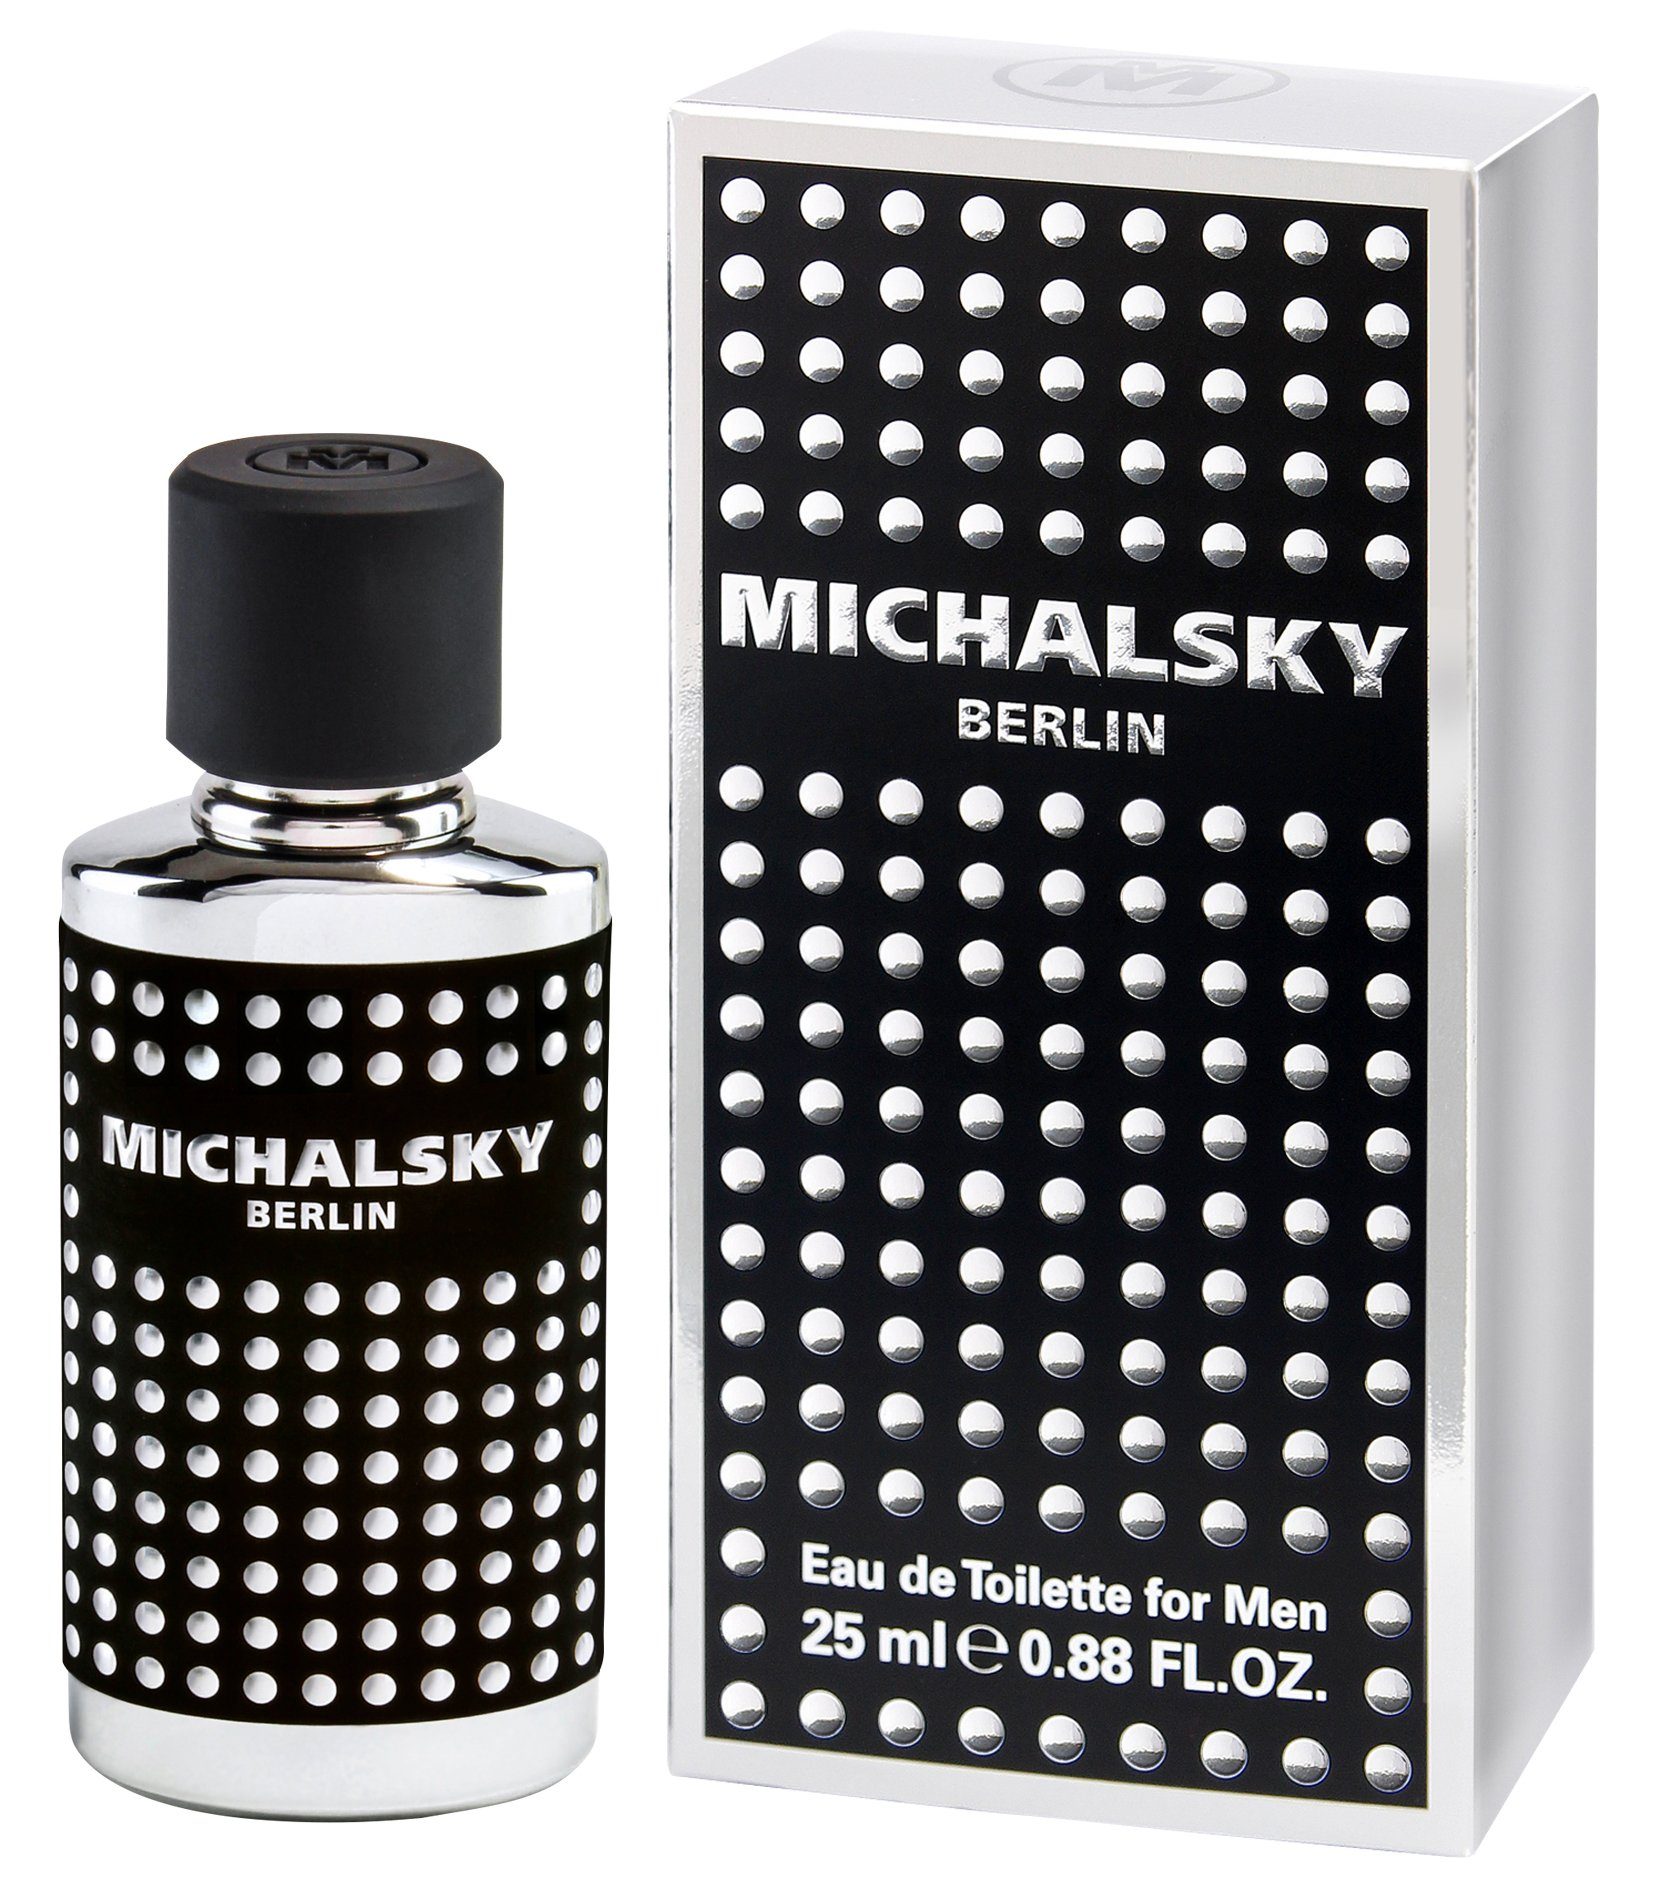 Michalsky Eau de Toilette, Berlin Men 25 ml Herren Duft Spray EdT Parfum